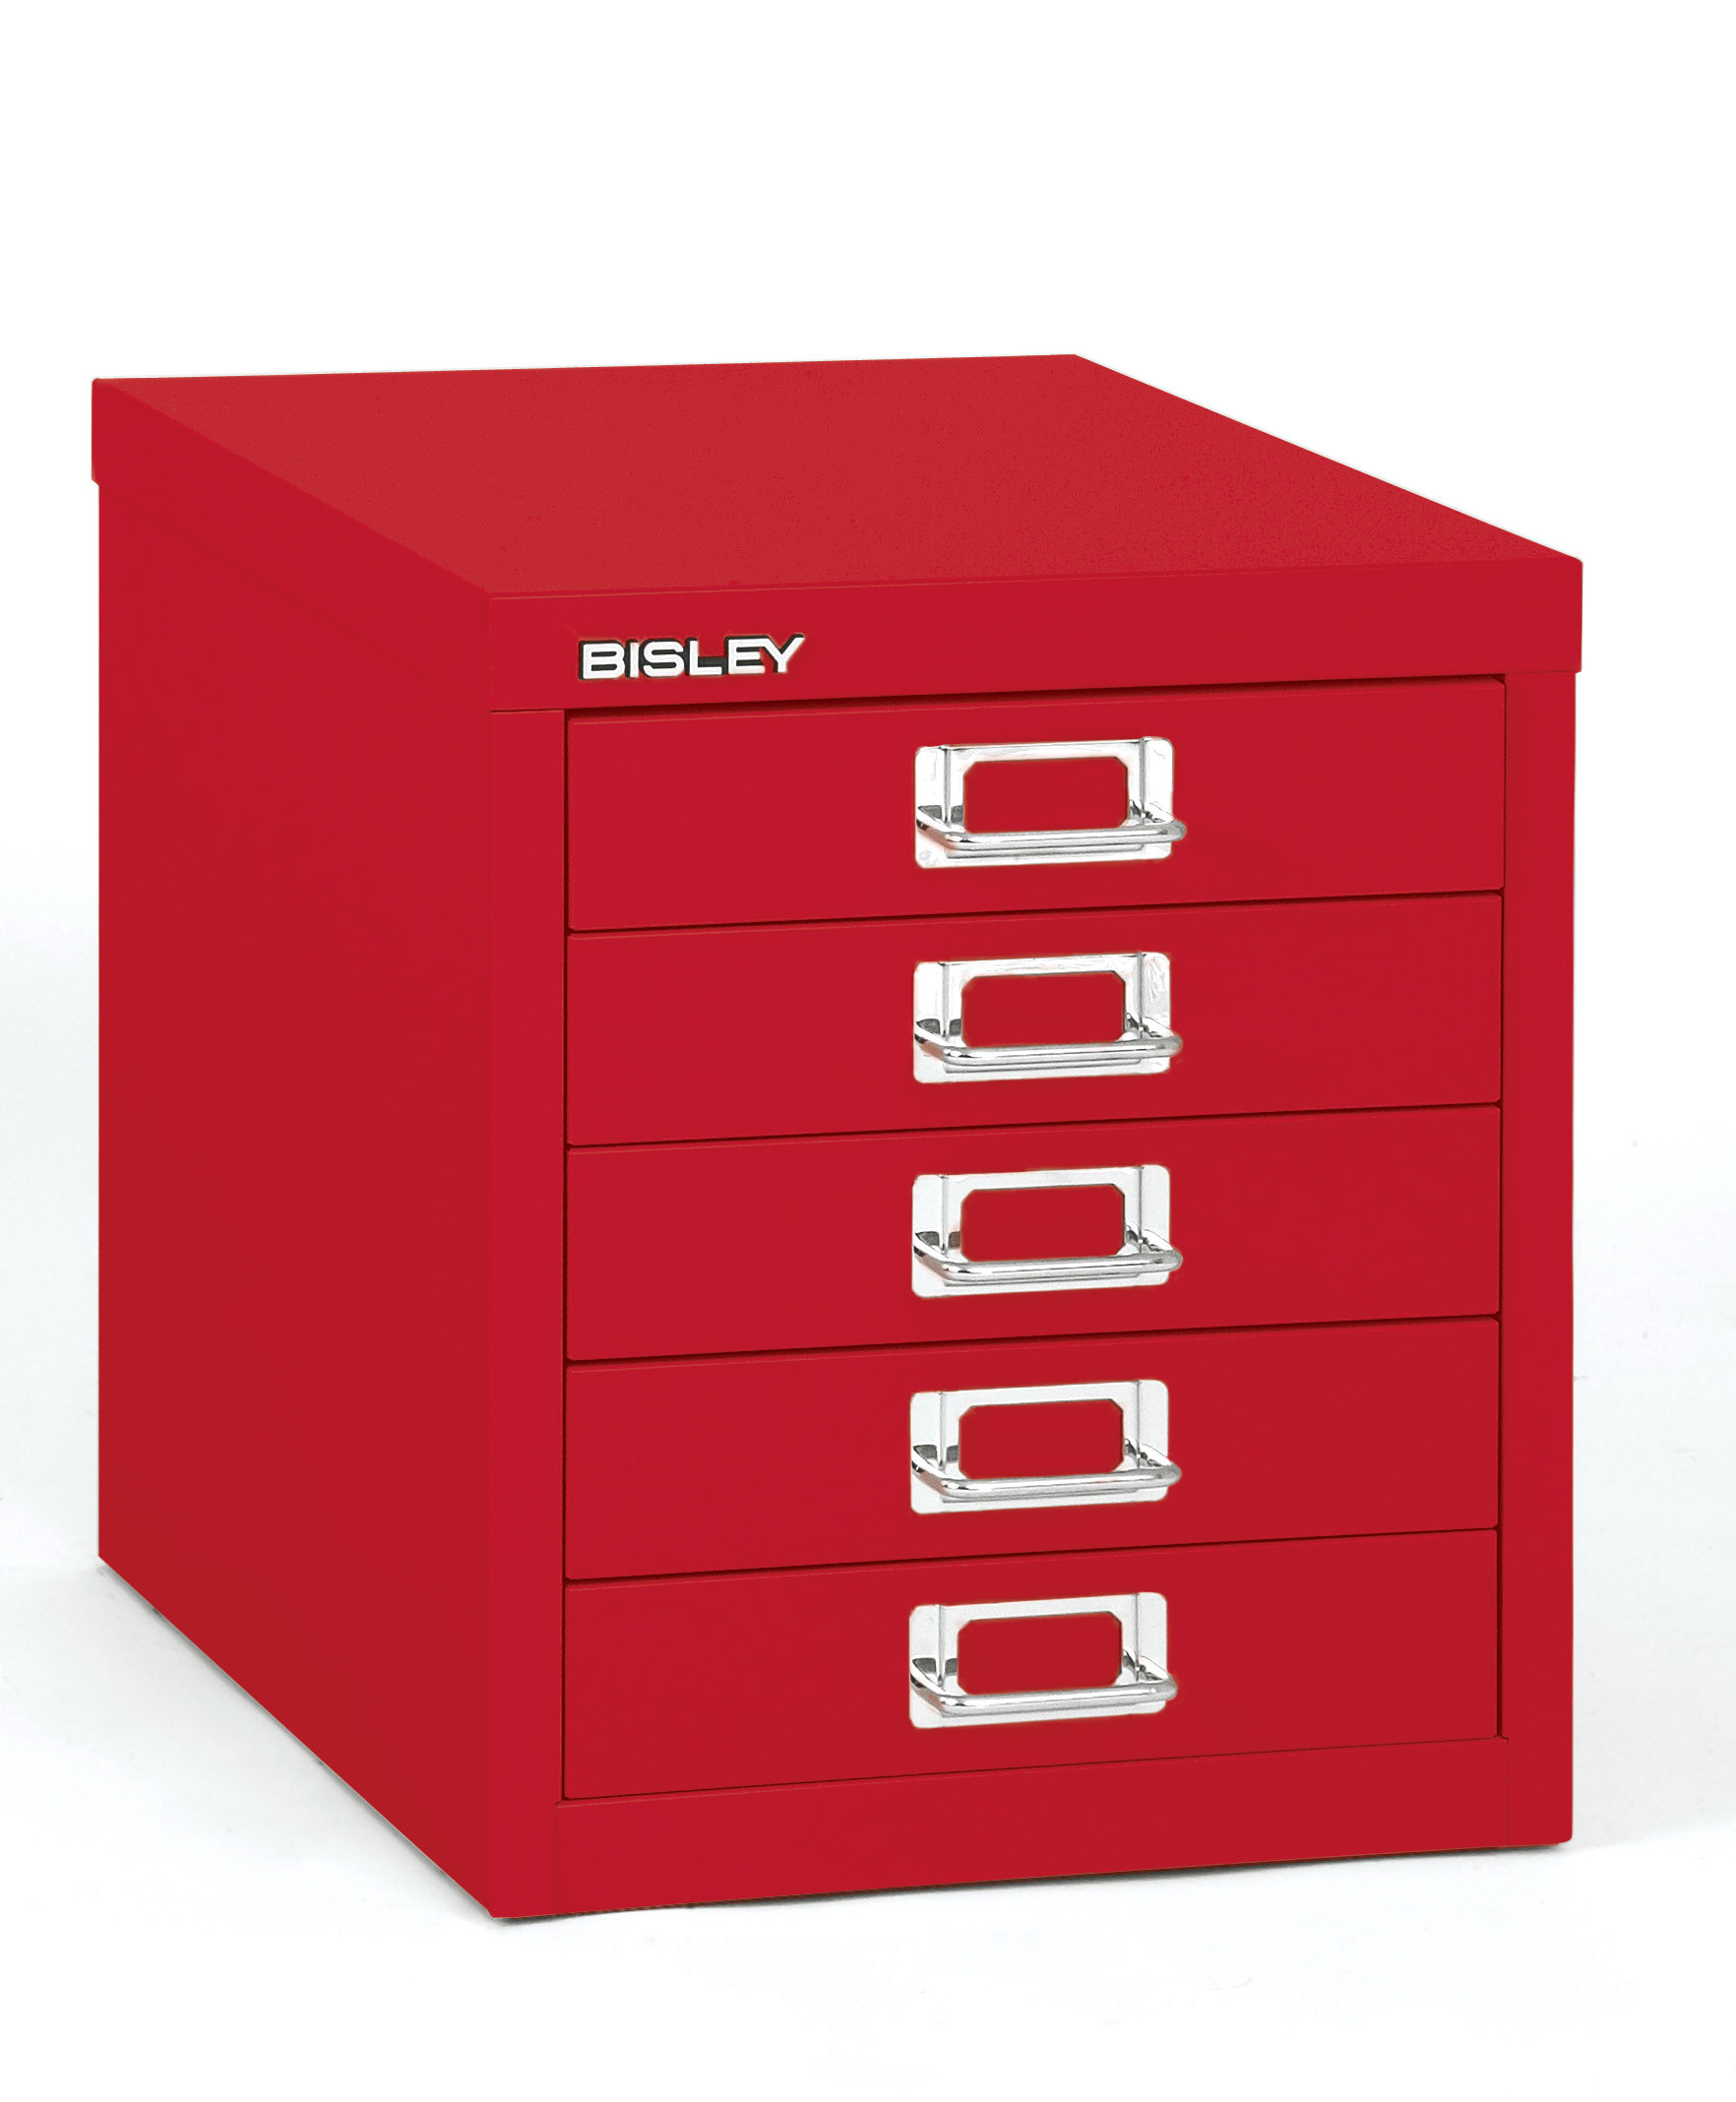 Bisley 5 Drawer Vertical Filing Cabinet Reviews Wayfair regarding sizing 1764 X 2136